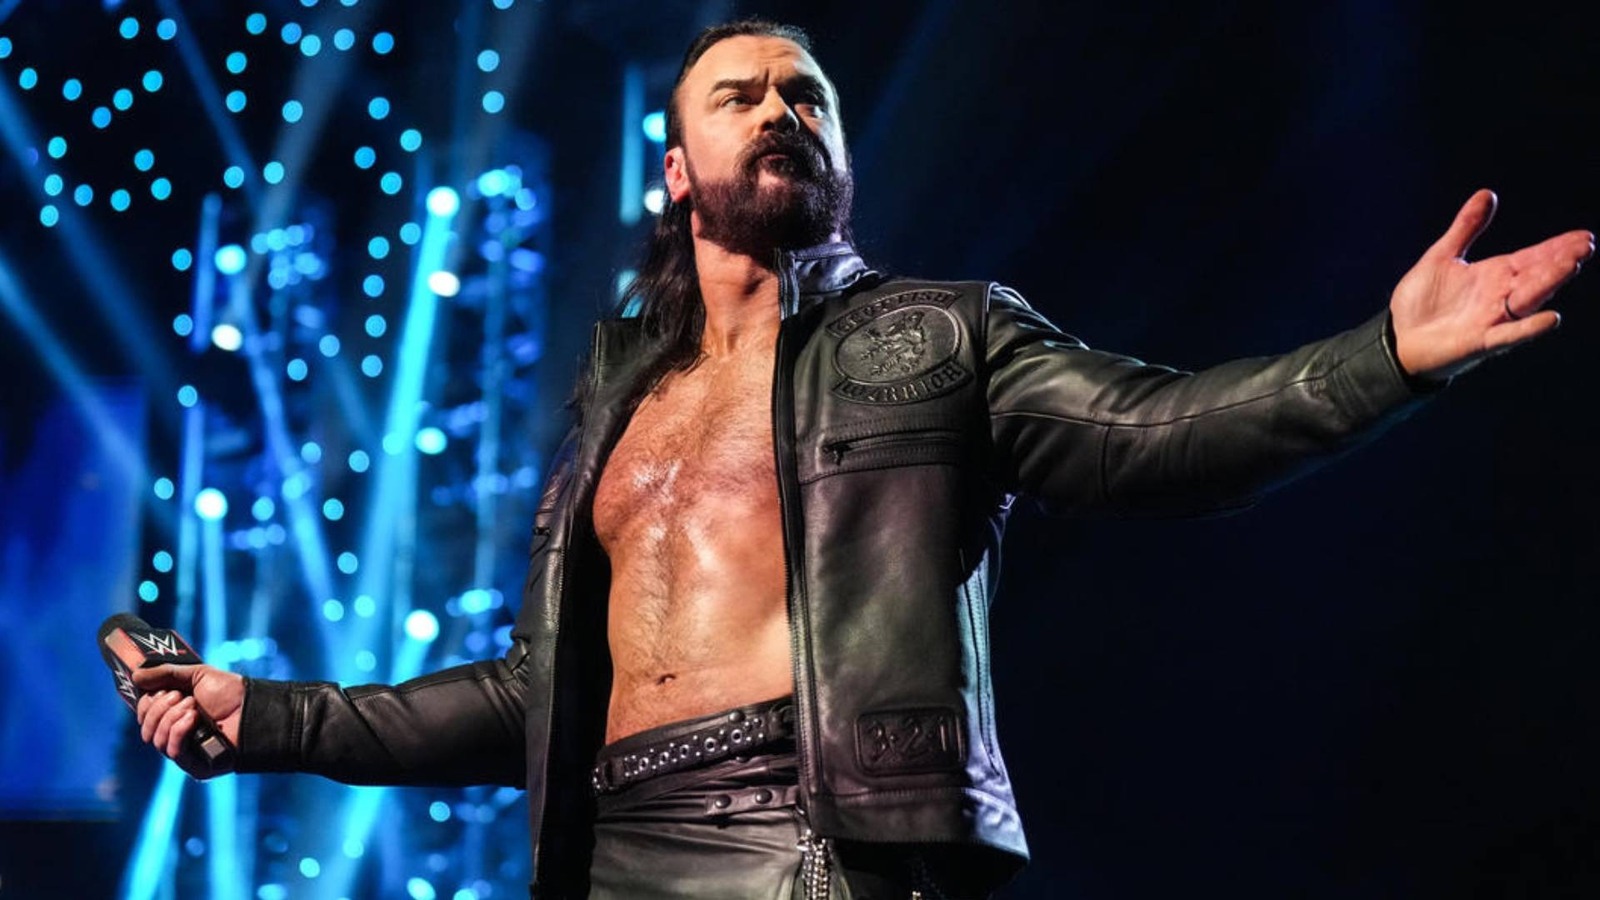 Według doniesień Drew McIntyre opuścił ring po głównym wydarzeniu WWE Survivor Series